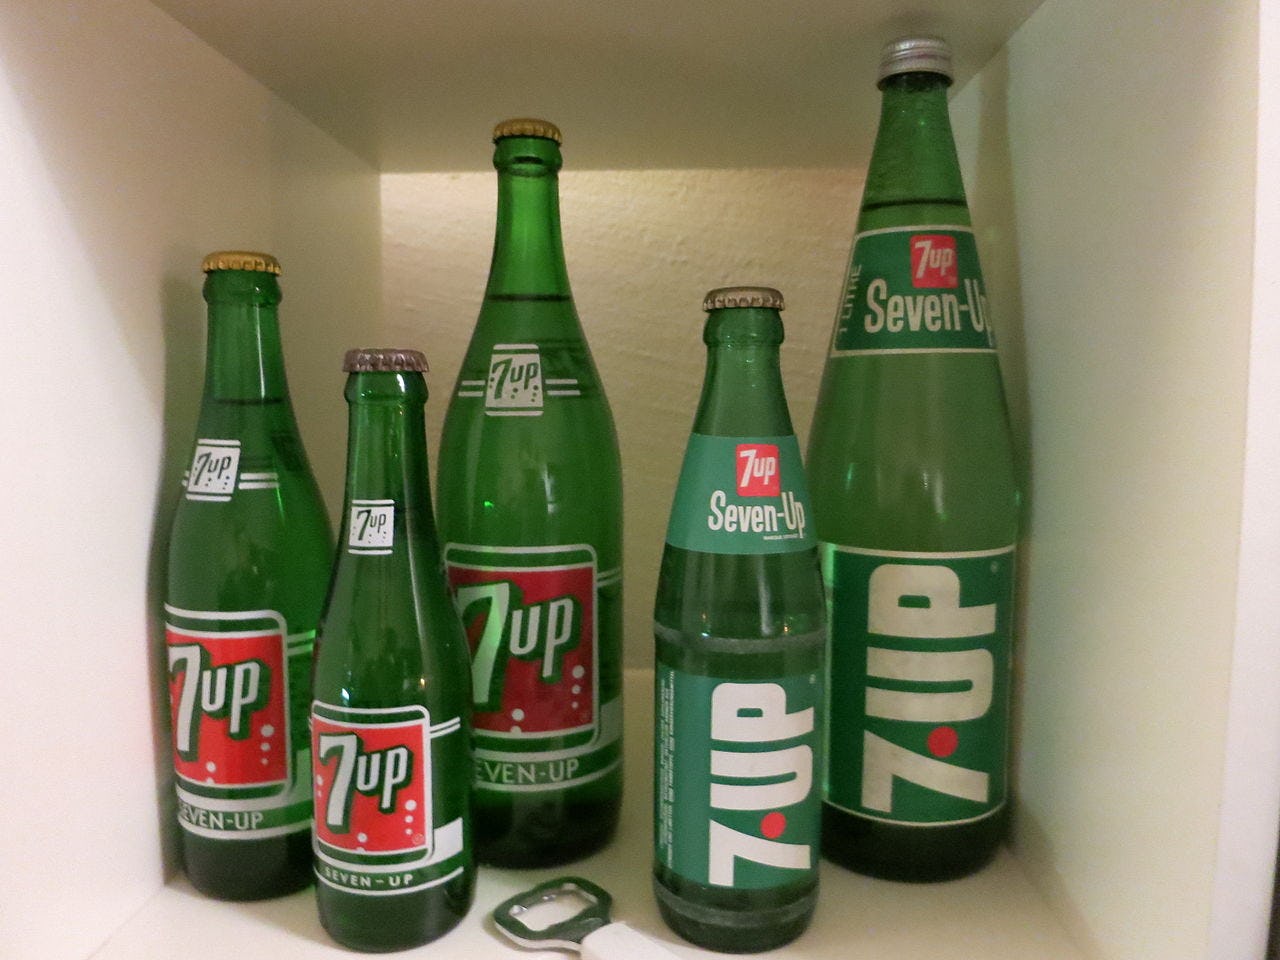 De groene 7up-fles verdwijnt na 92 jaar. 